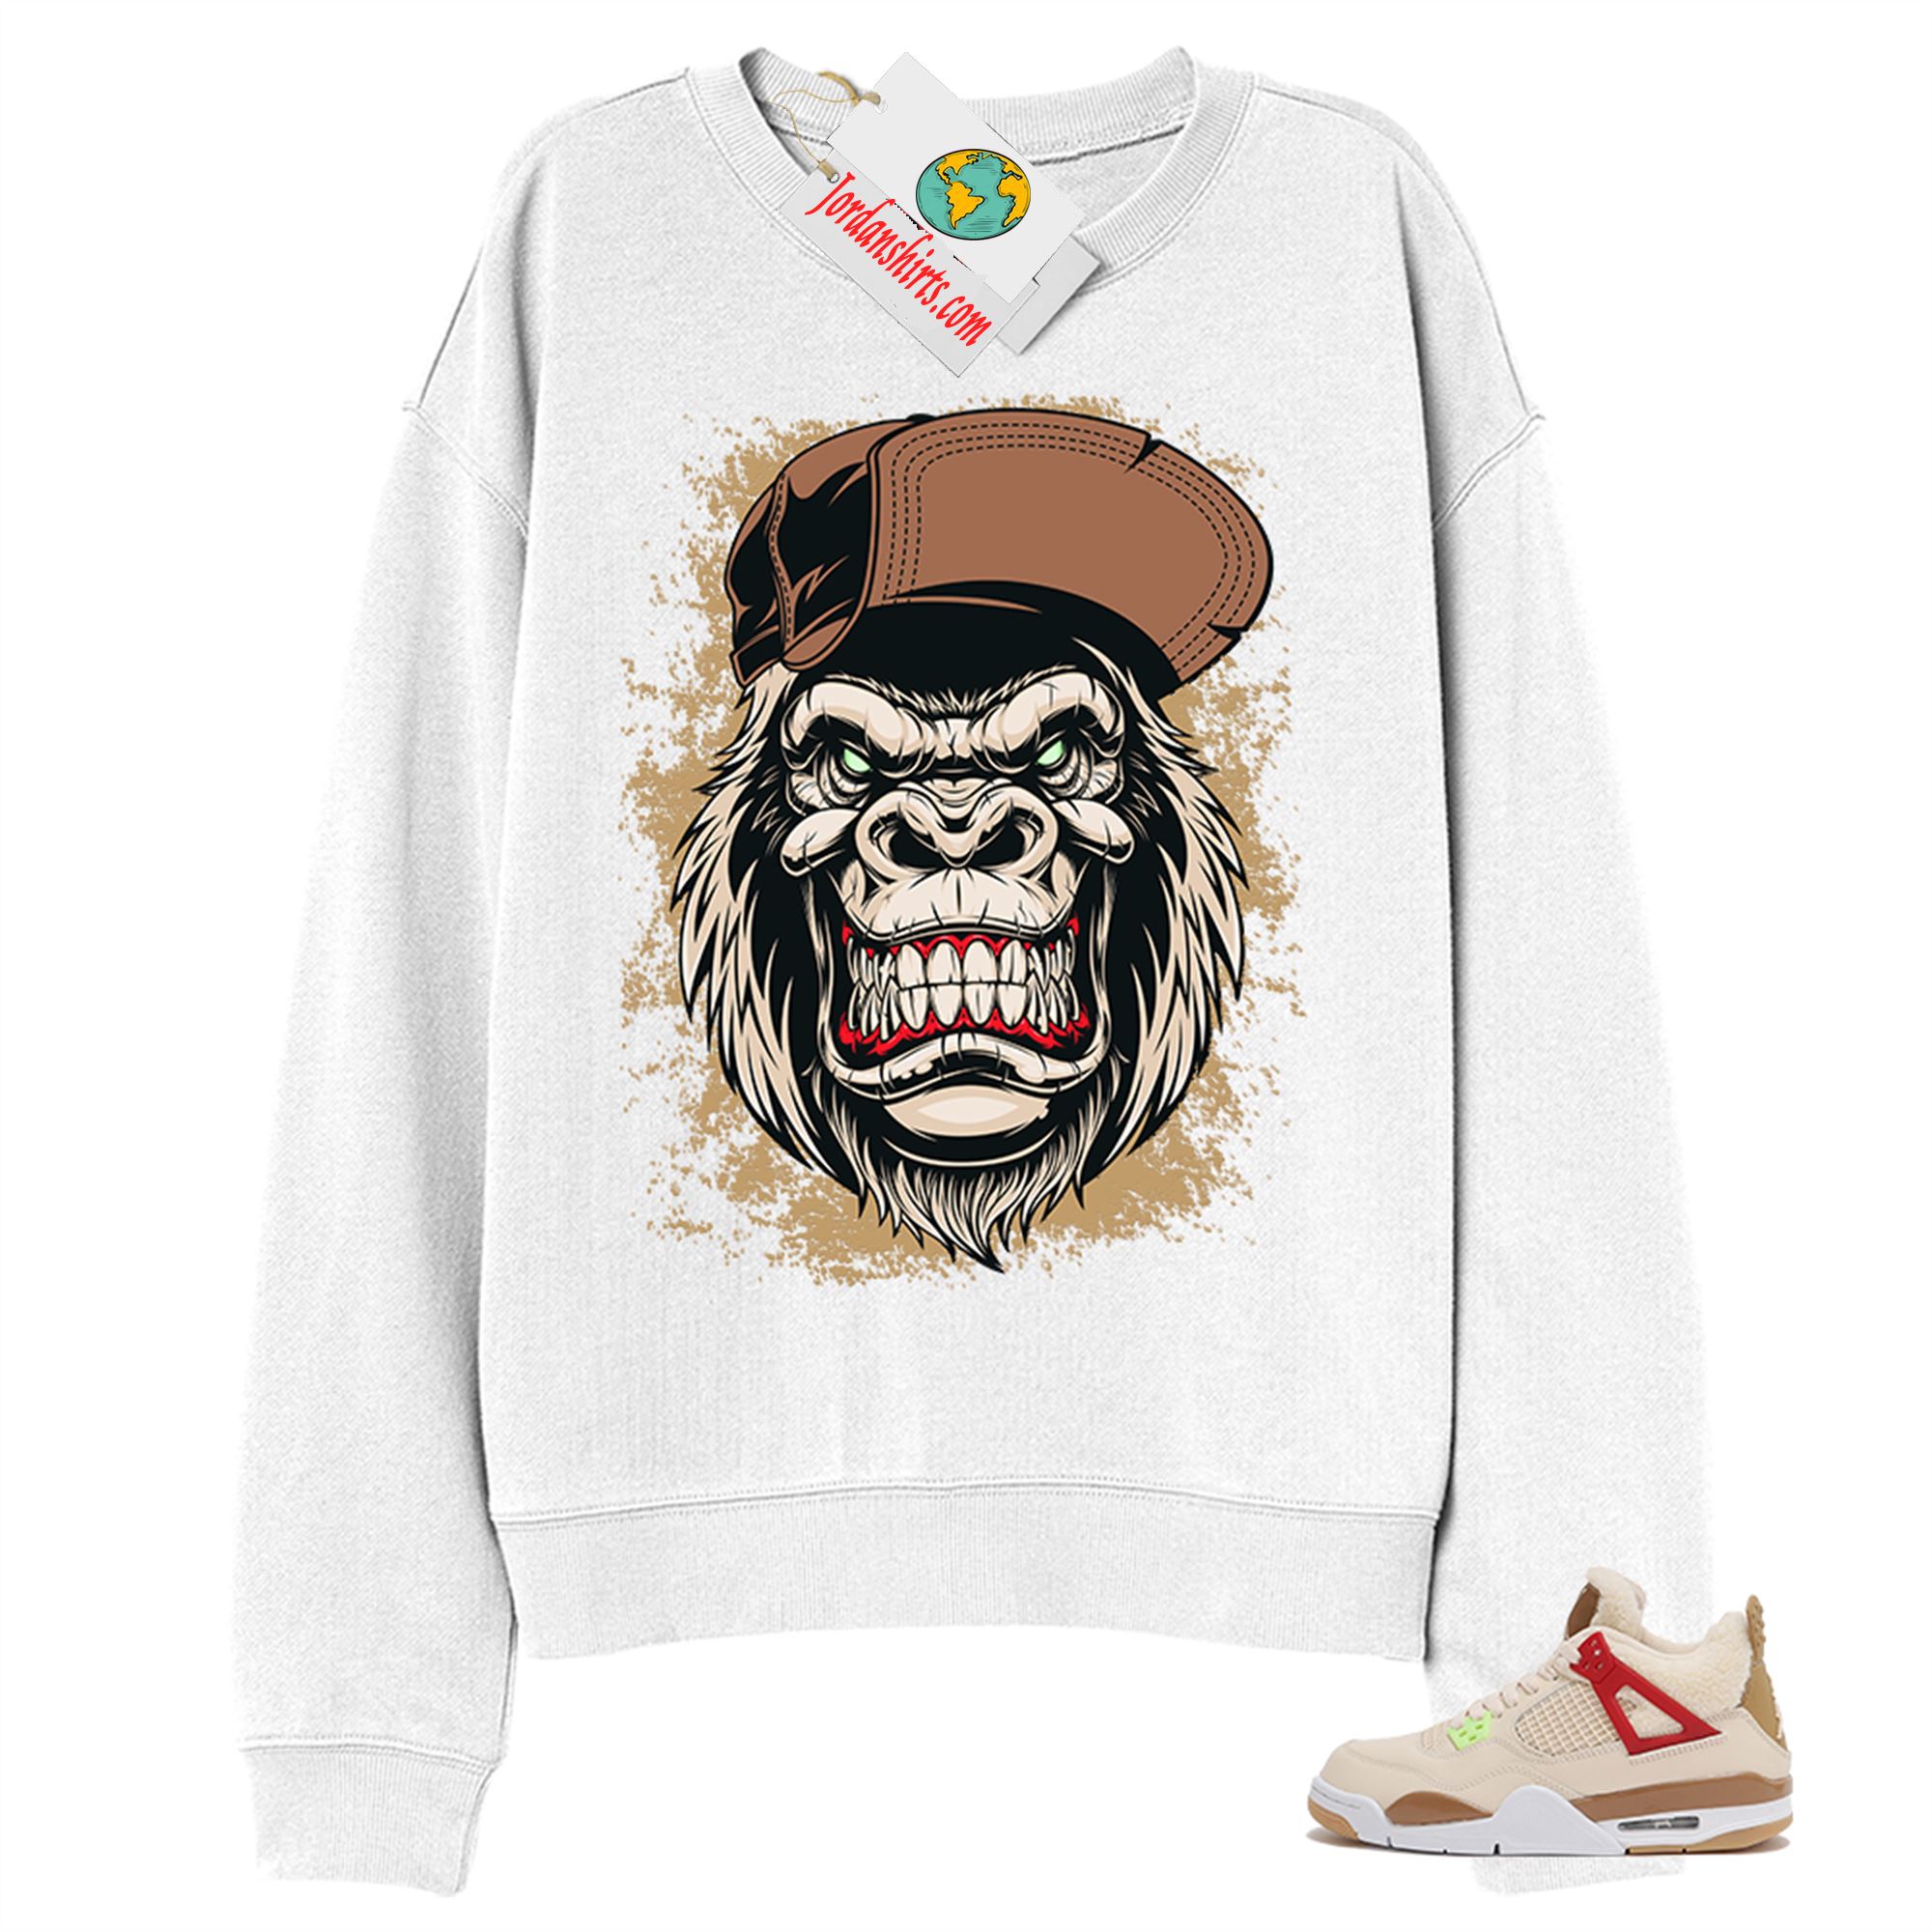 Jordan 4 Sweatshirt, Ferocious Gorilla White Sweatshirt Air Jordan 4 Wild Things 4s Size Up To 5xl